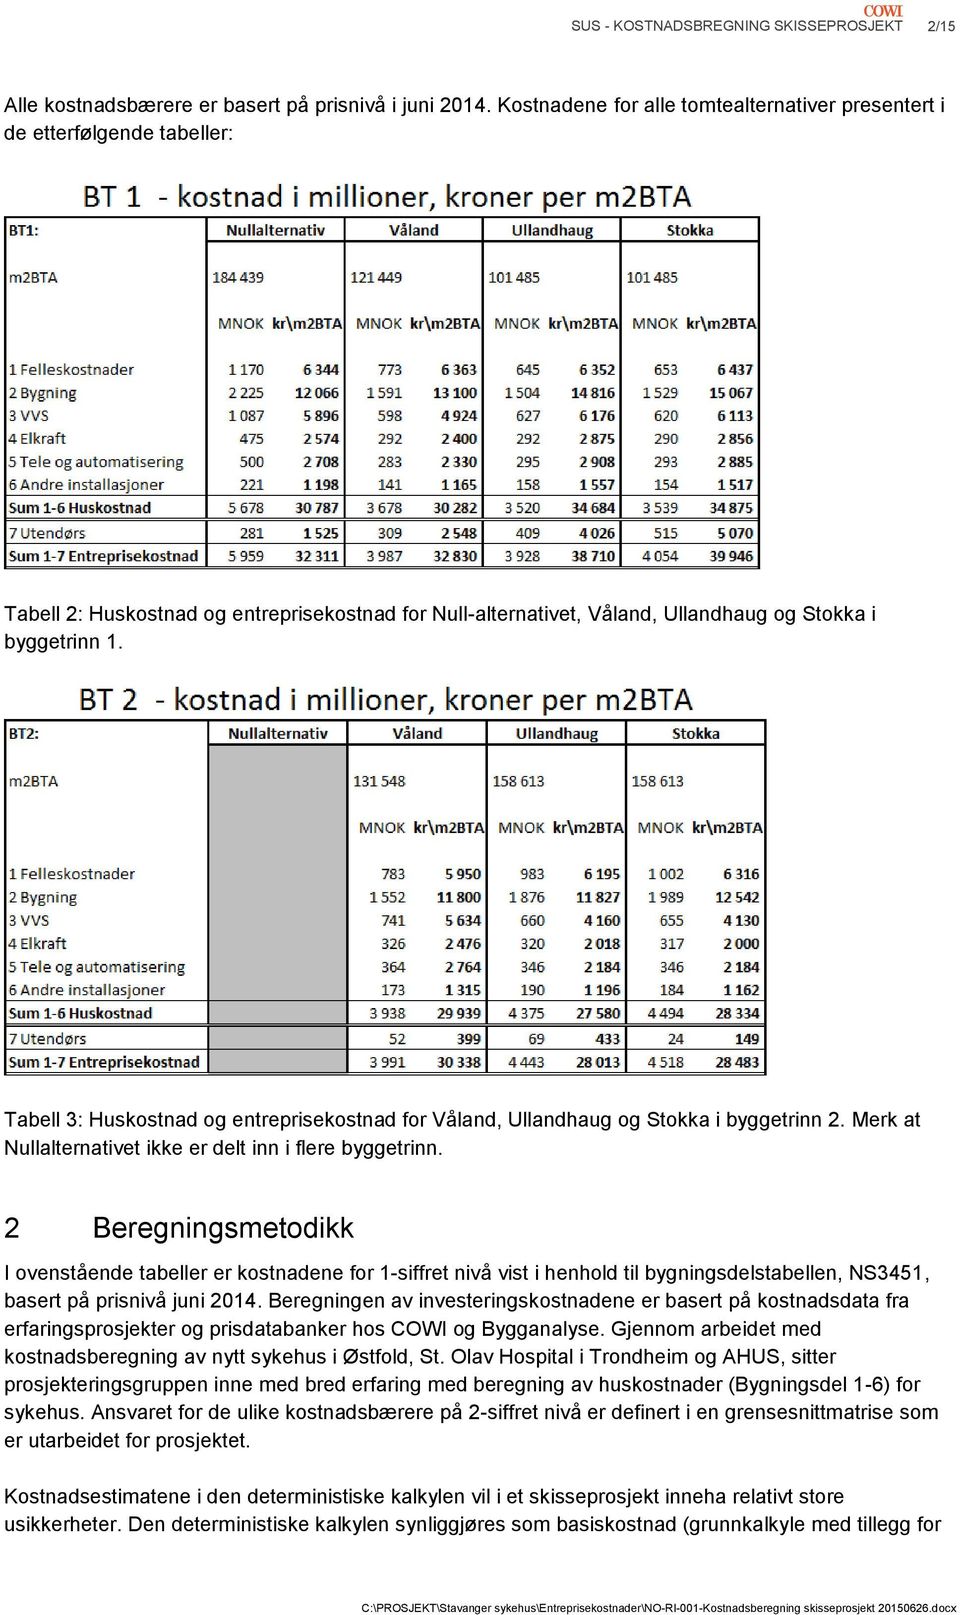 Tabell 3: Huskostnad og entreprisekostnad for Våland, Ullandhaug og Stokka i byggetrinn 2. Merk at Nullalternativet ikke er delt inn i flere byggetrinn.